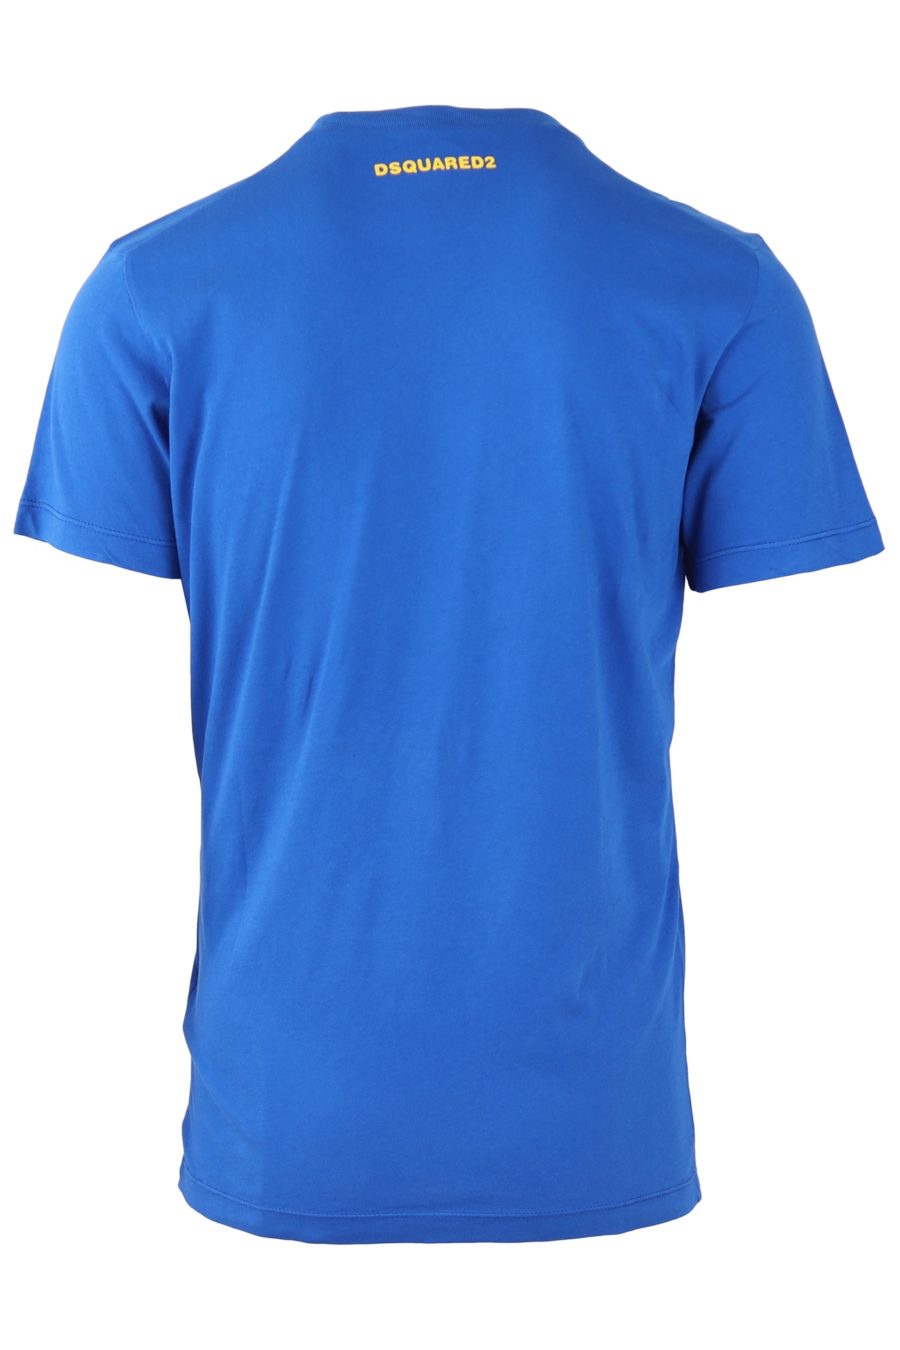 Camiseta Dsquared2 azul con logo grande DSQ2 - c46590cc688972265fa3ad8a97ce7159698c8de6